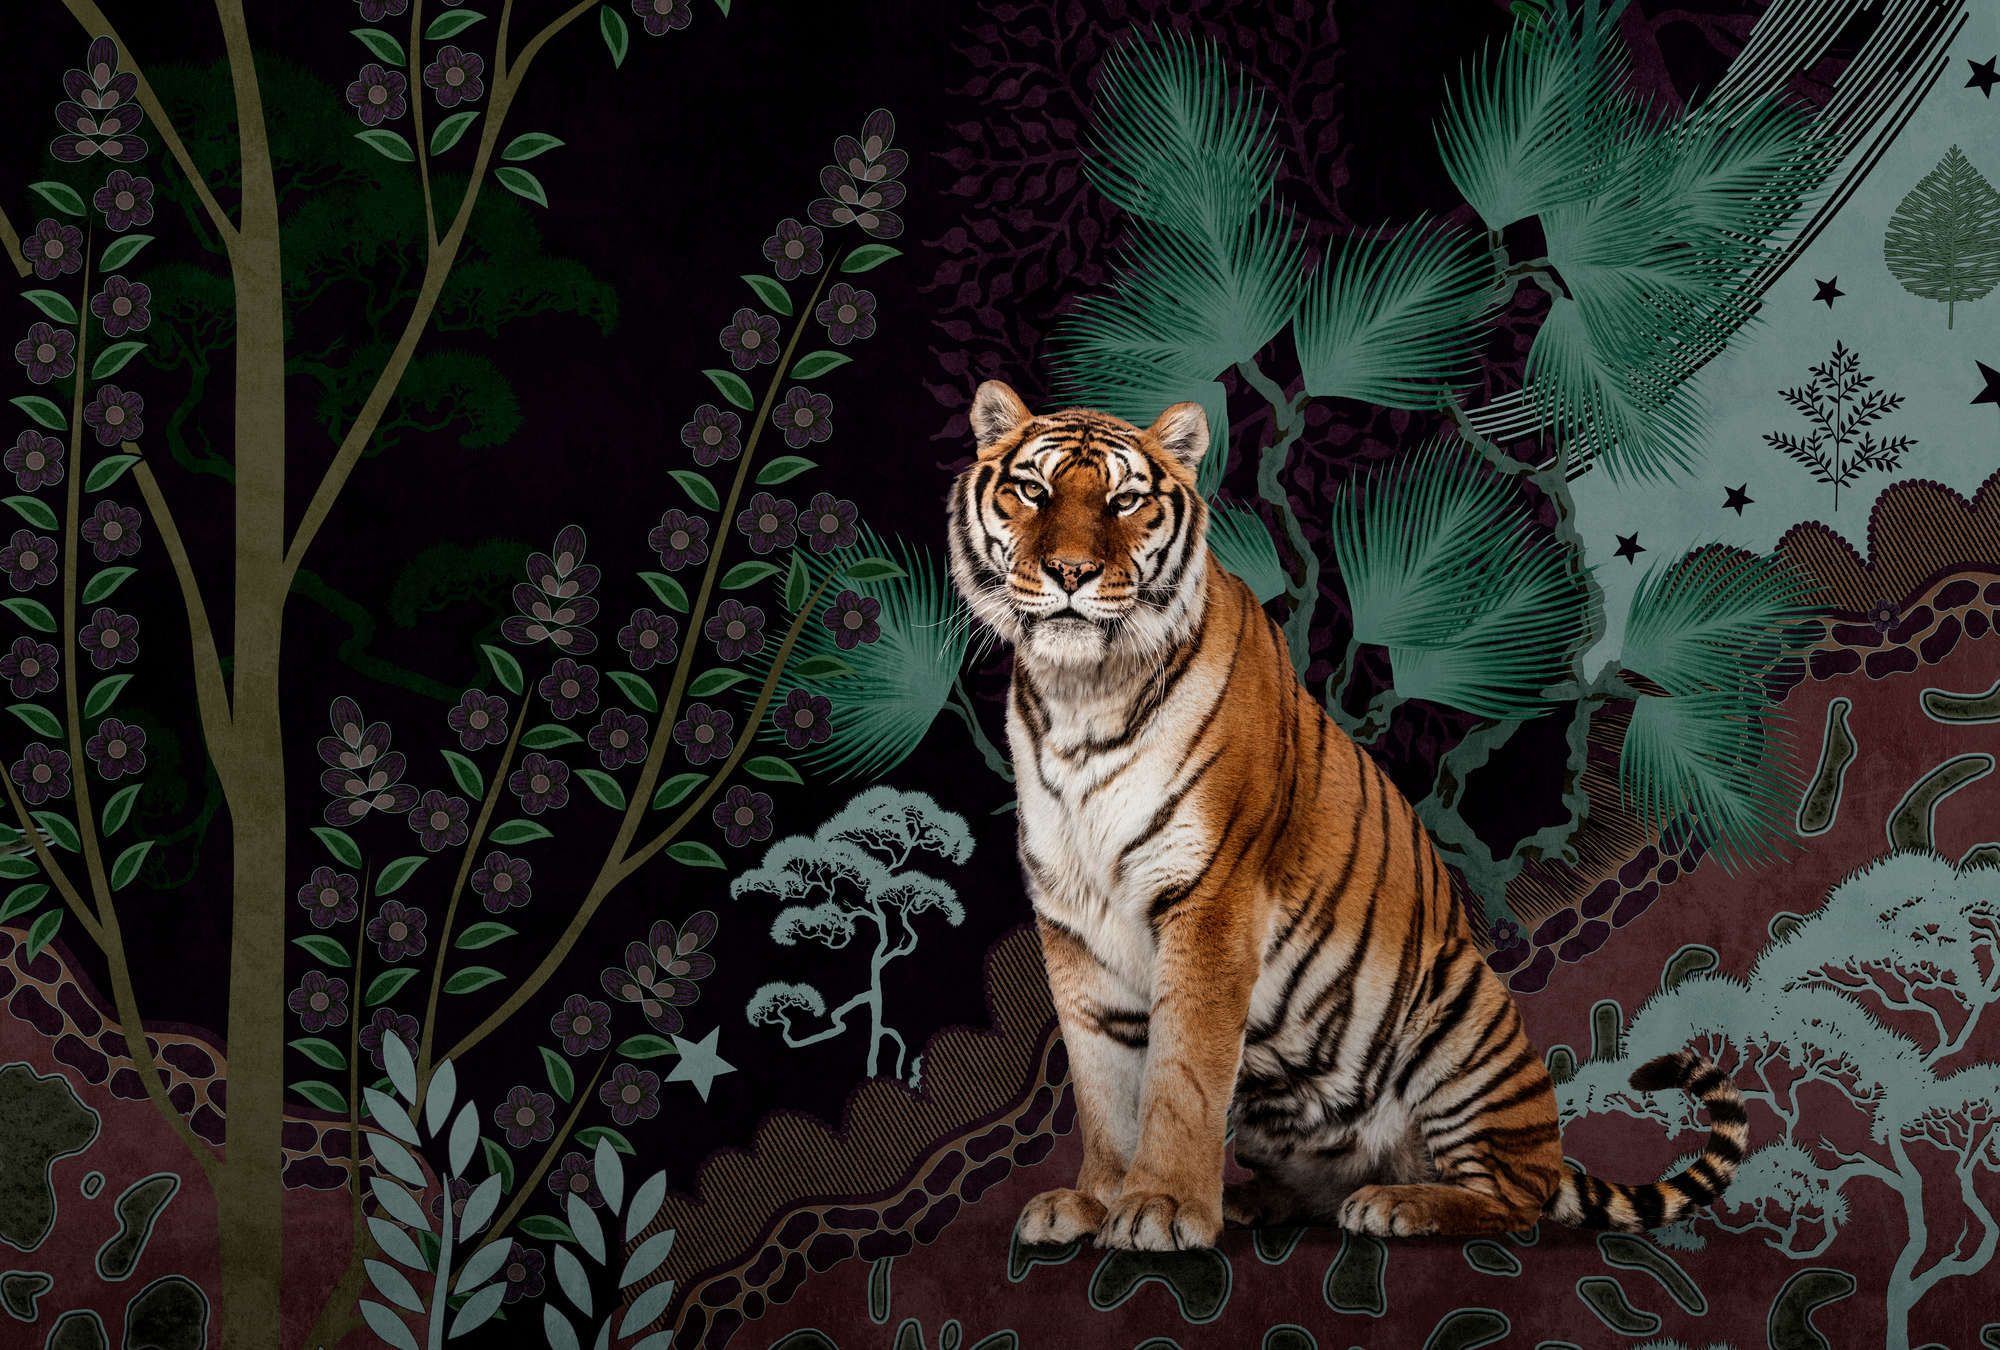             Fotomural »khan« - Motivo abstracto de jungla con tigre - Tela no tejida con textura ligera
        